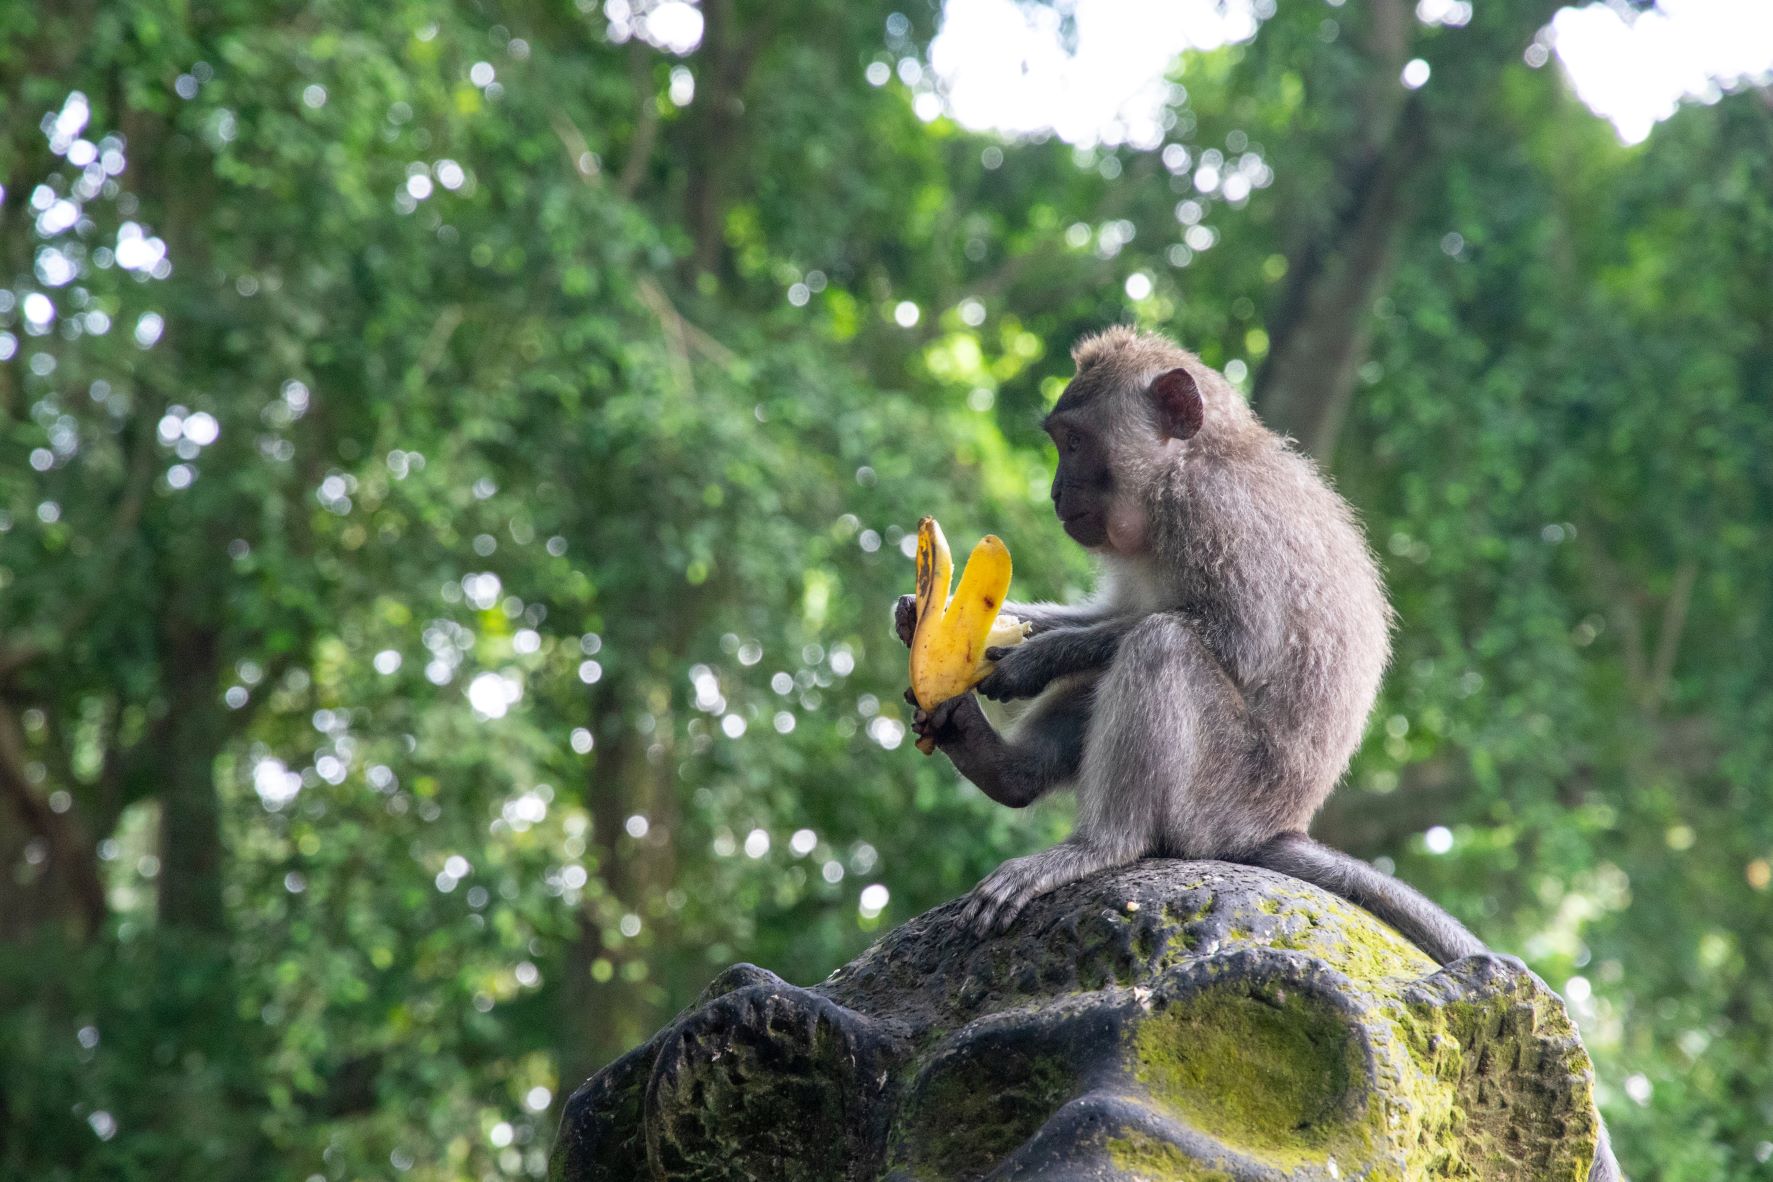 Monkey eating banana in jungle